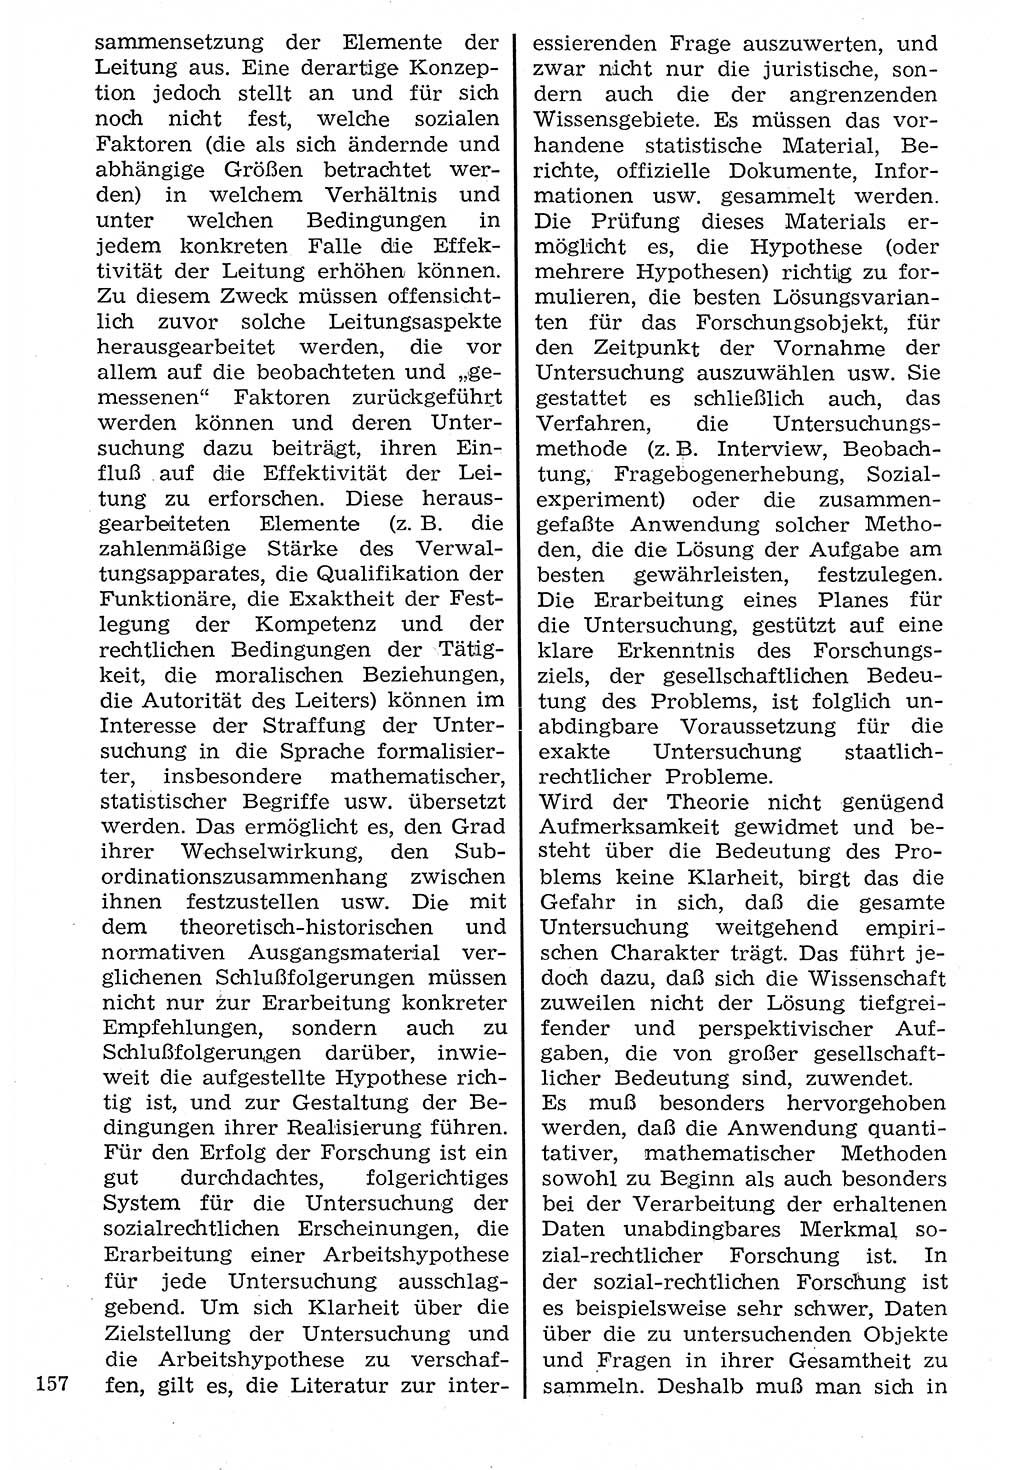 Staat und Recht (StuR), 17. Jahrgang [Deutsche Demokratische Republik (DDR)] 1968, Seite 157 (StuR DDR 1968, S. 157)